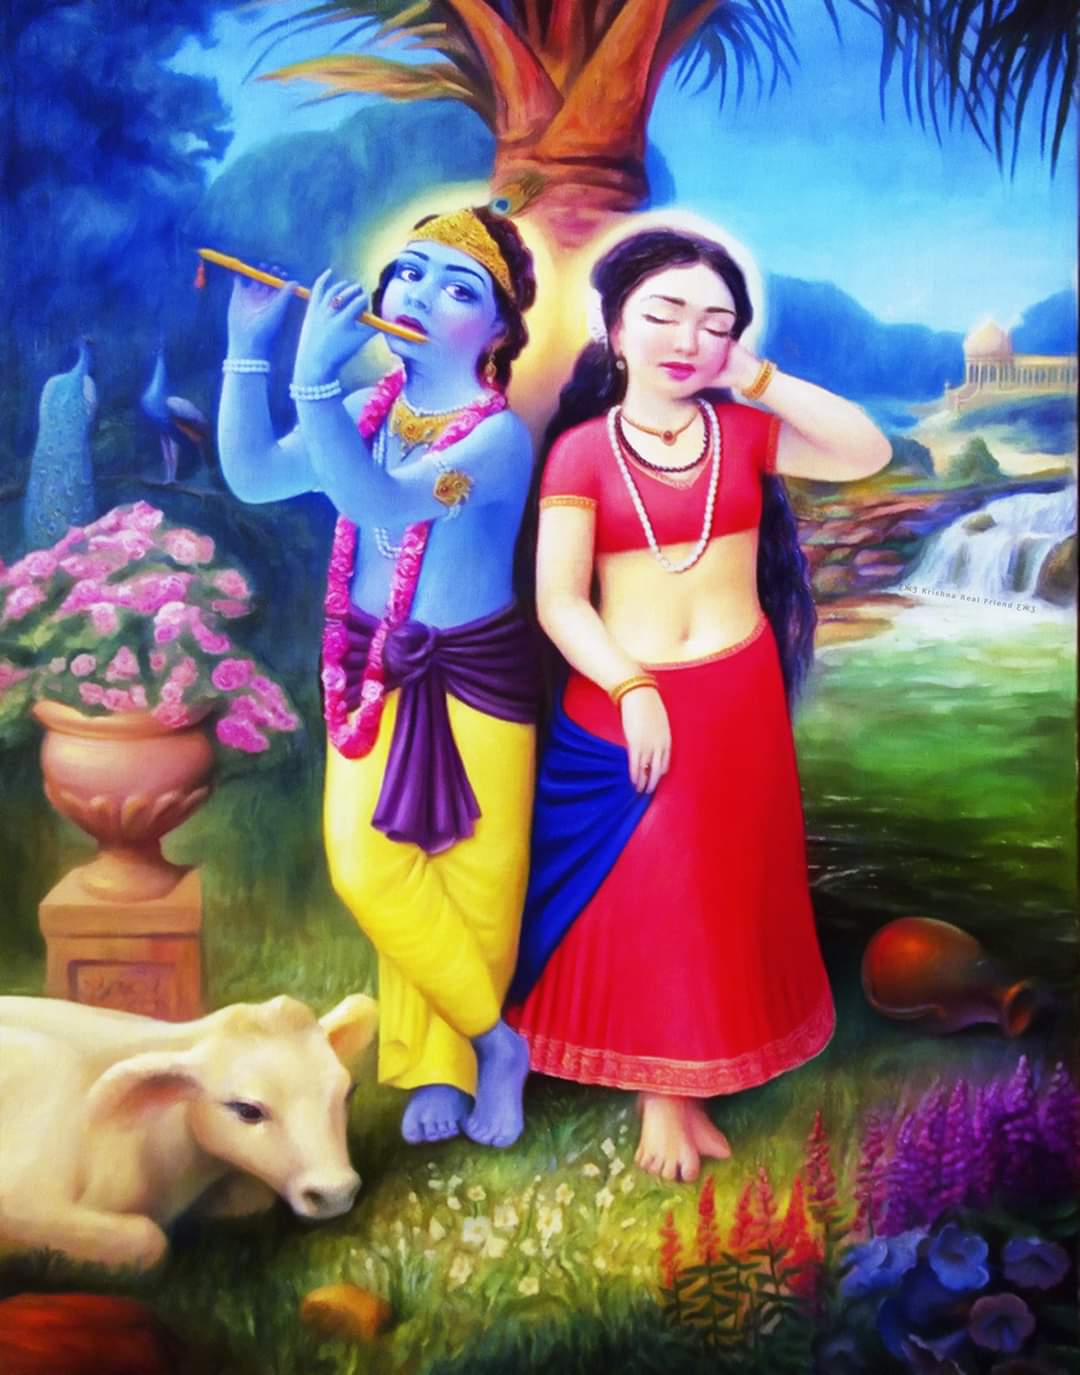 Radha Krishna Painting Image, Radha with Krishna